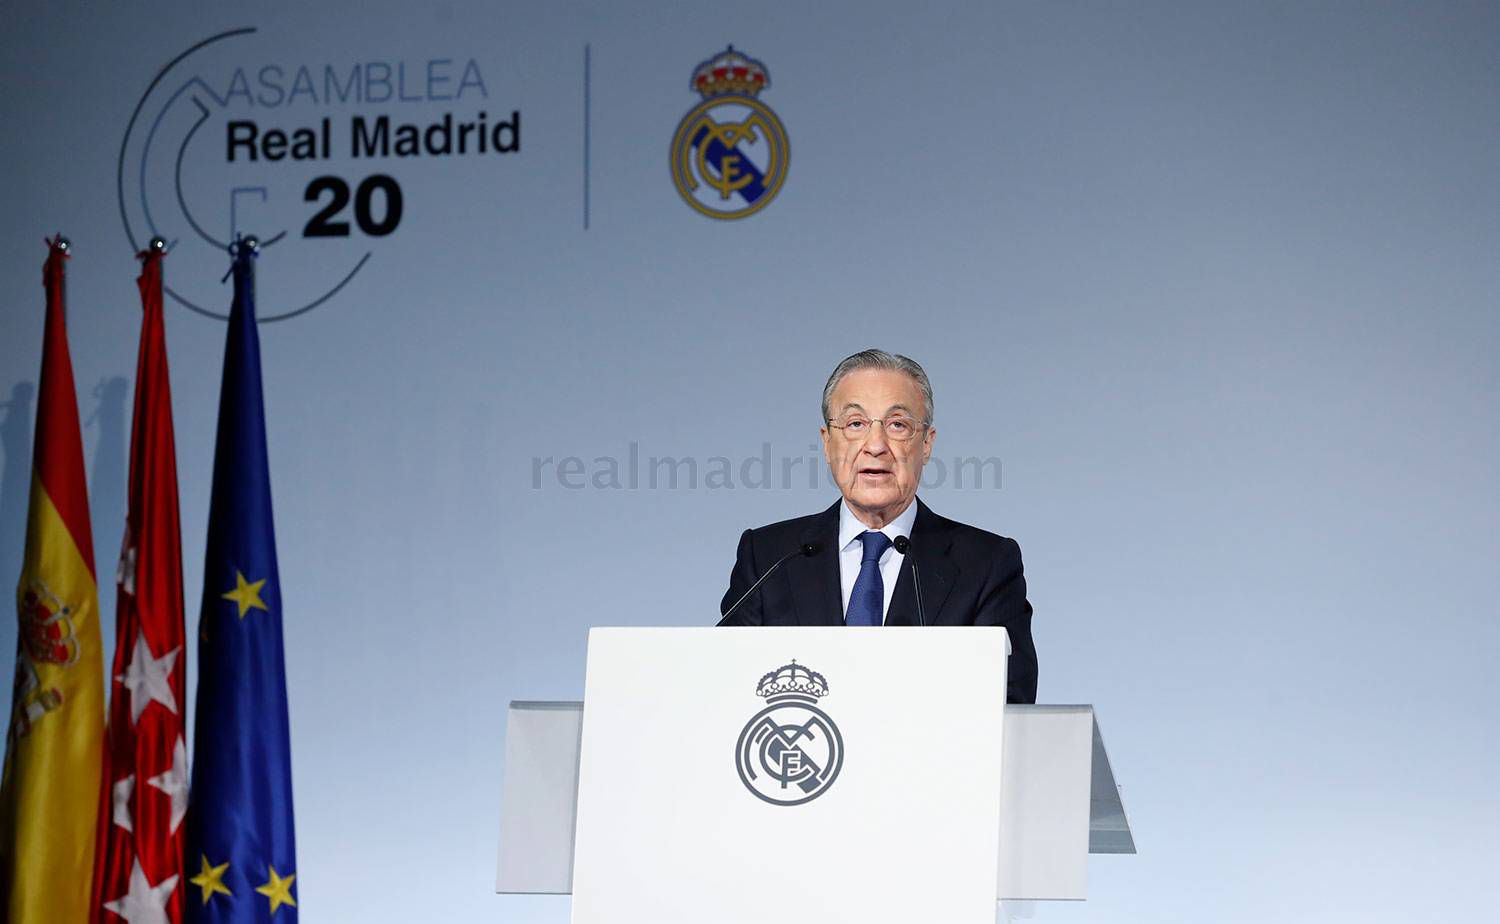 Presidente del Real Madrid desea regresar “a la normalidad” y “muchos éxitos” en 2021